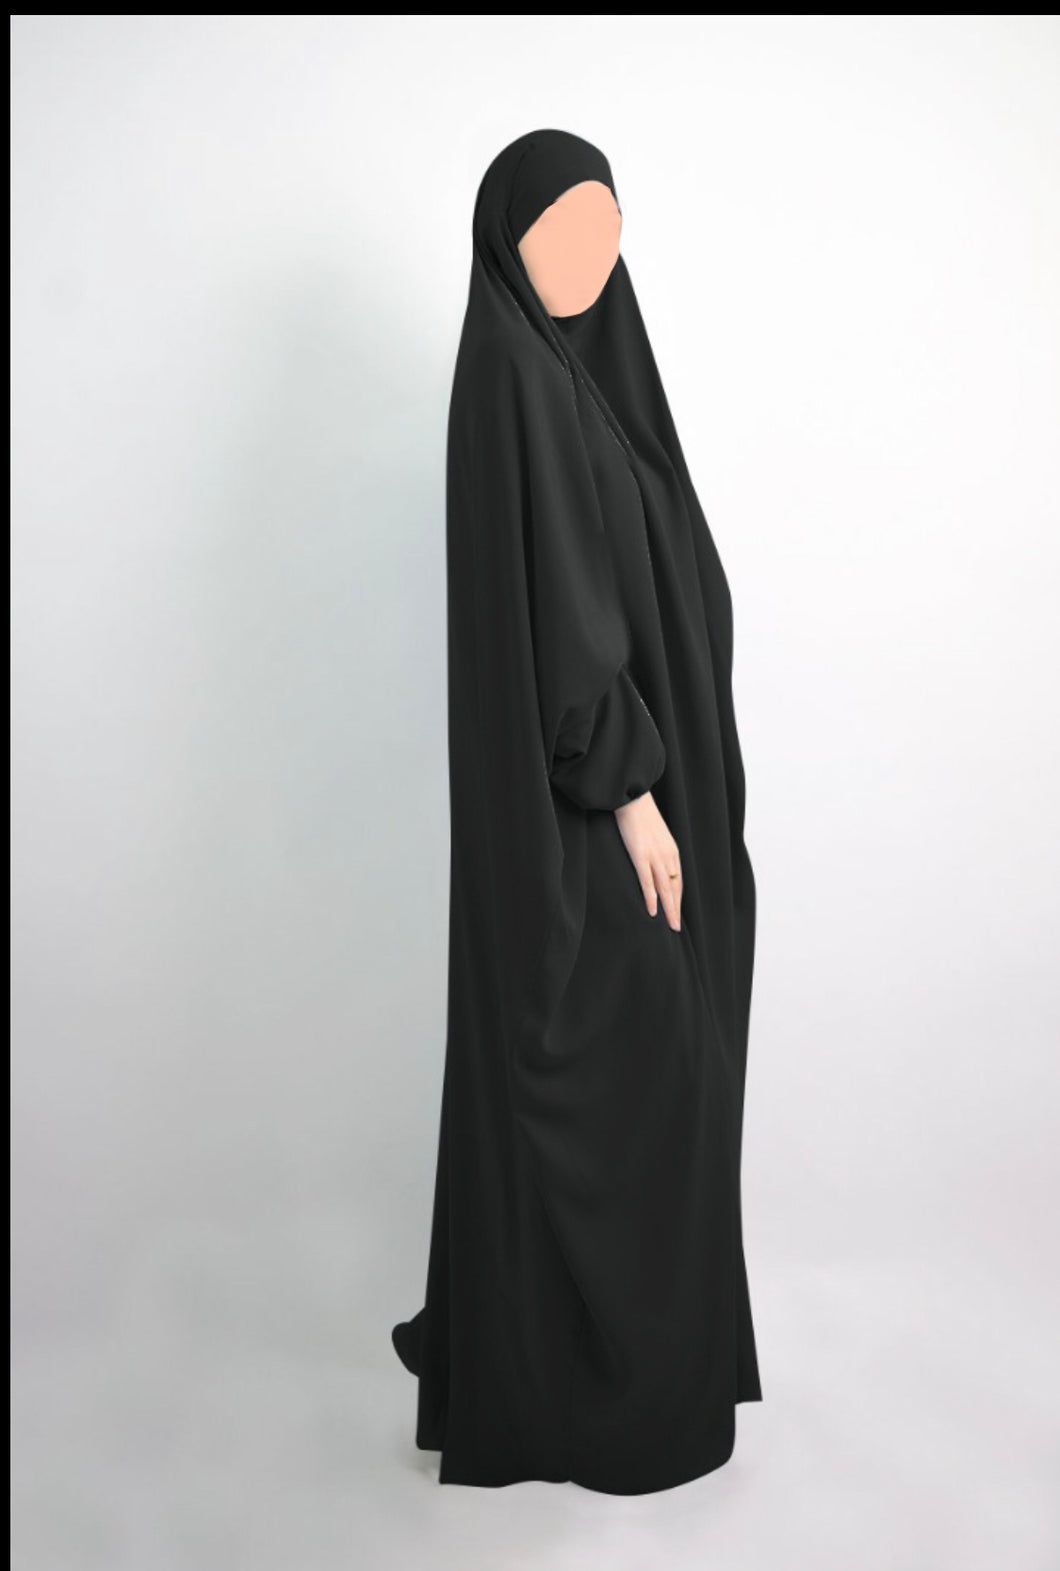 Black one piece jilbab